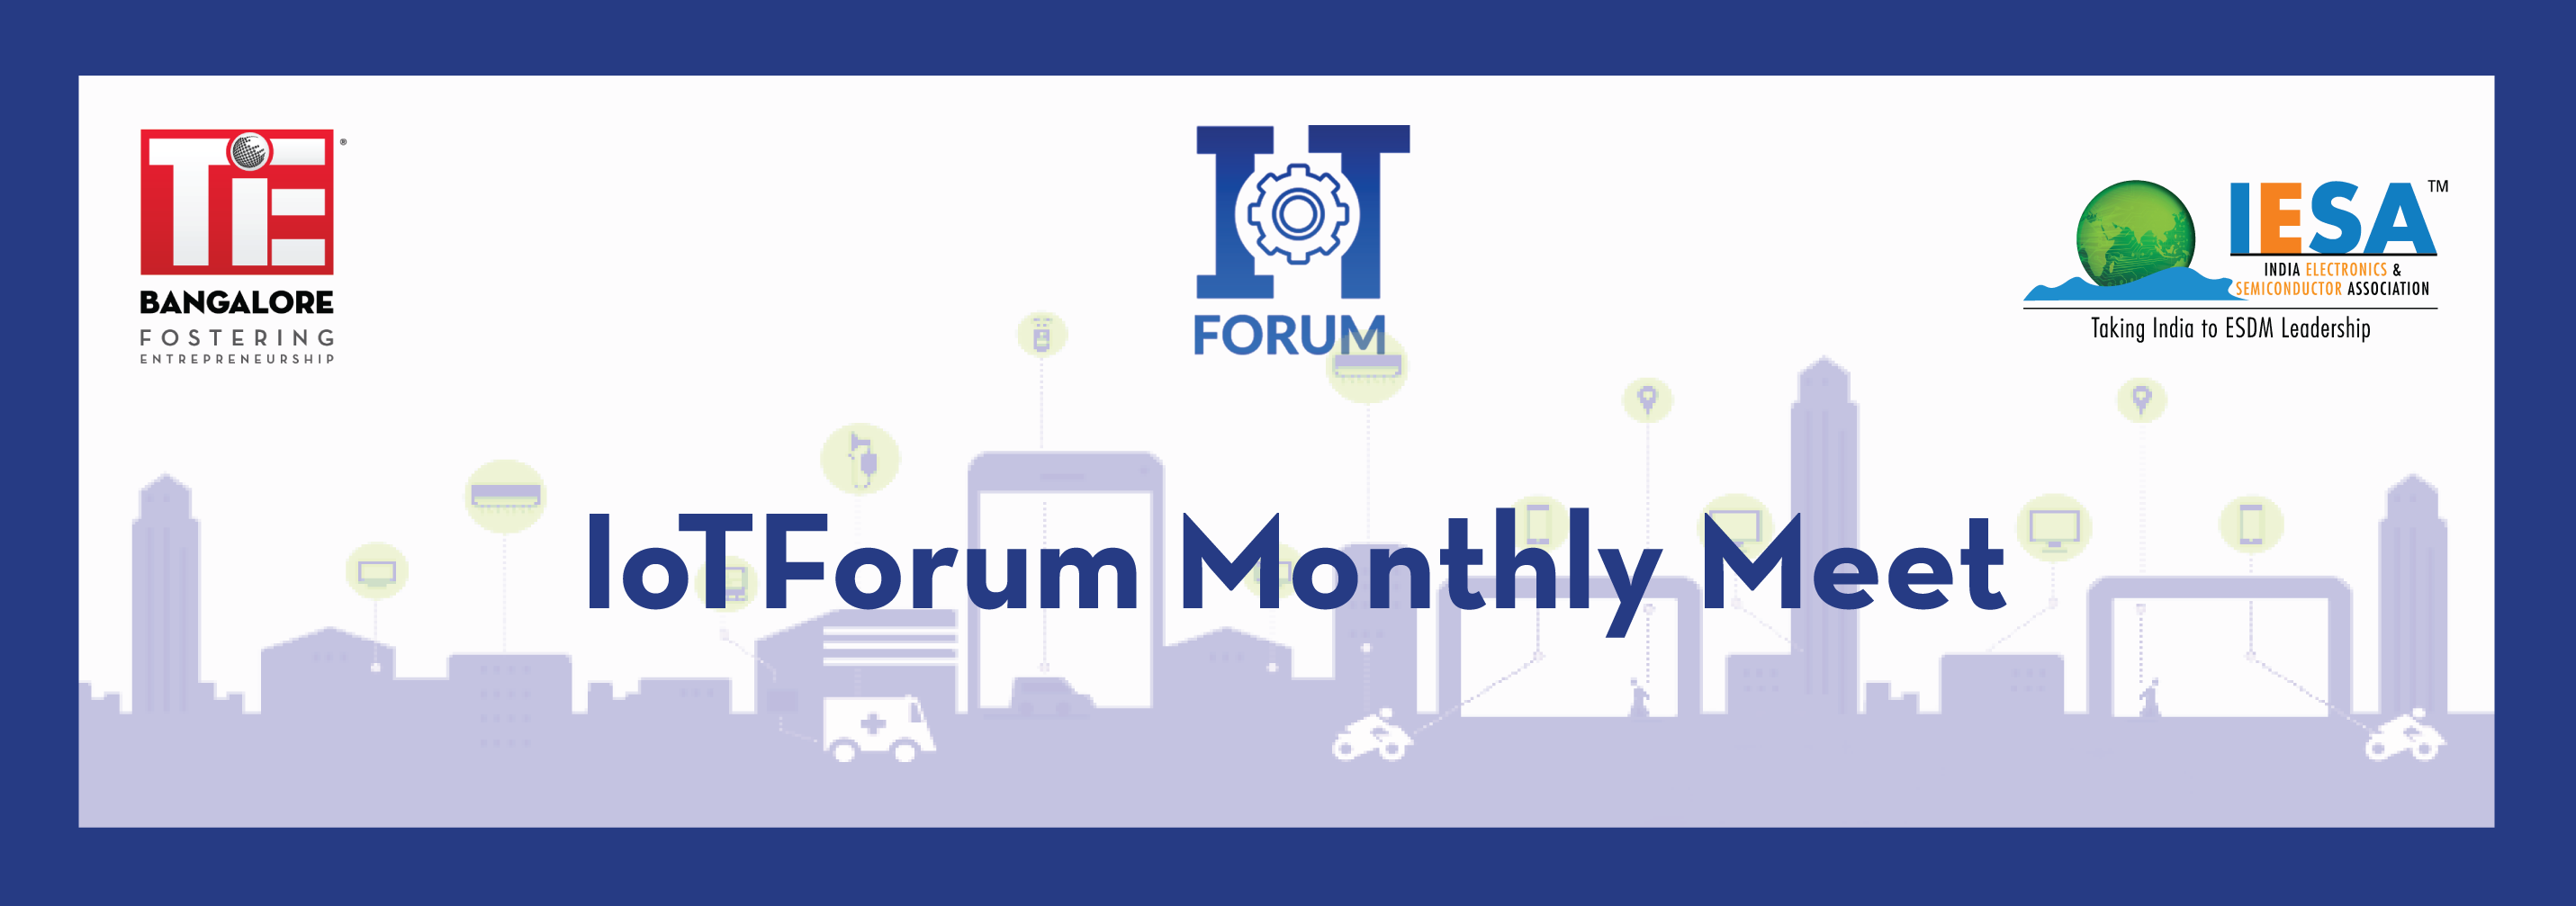 IoTForum Monthly Meet Banner